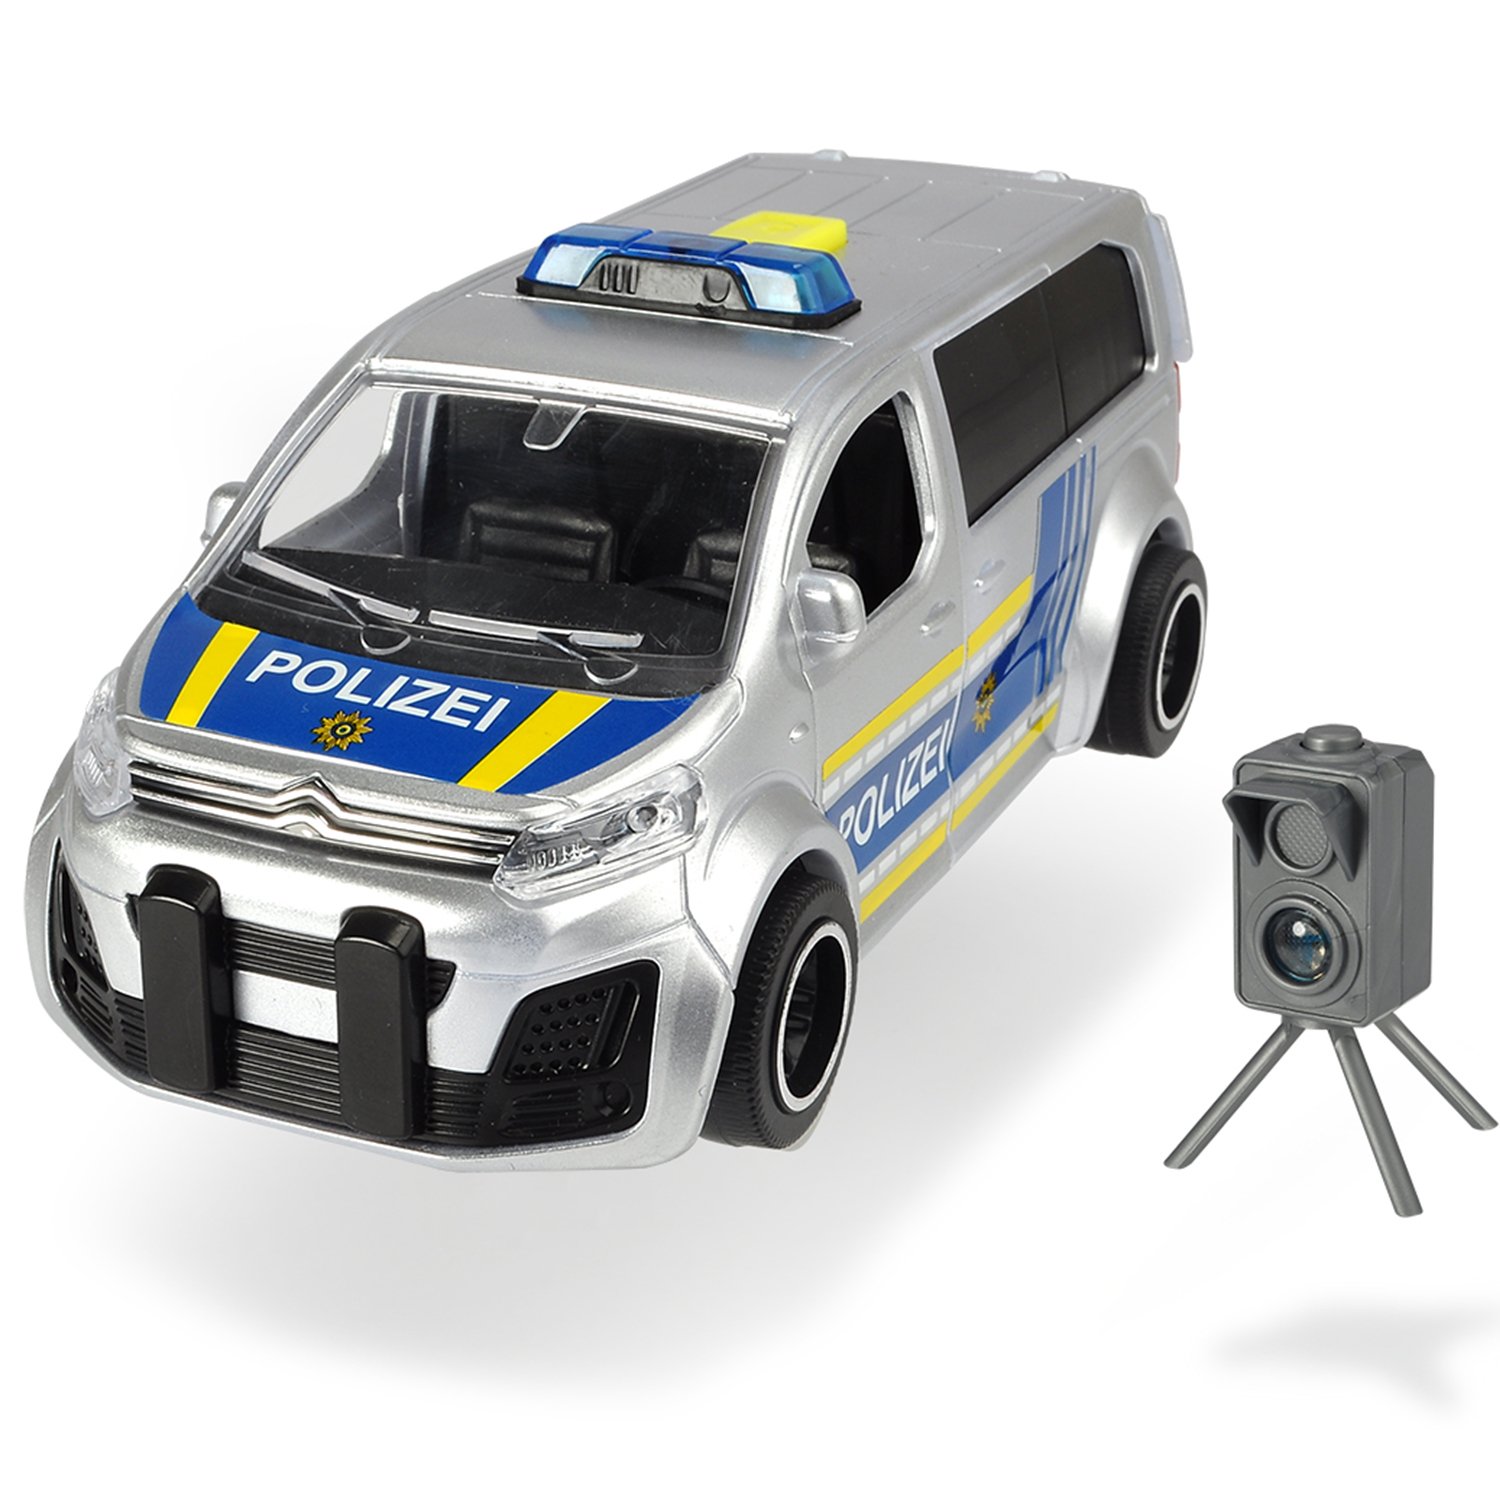 Фрикционный полицейский минивэн - Citroën SpaceTourer с радаром, 15 см, масштаб 1:32, свет, звук  